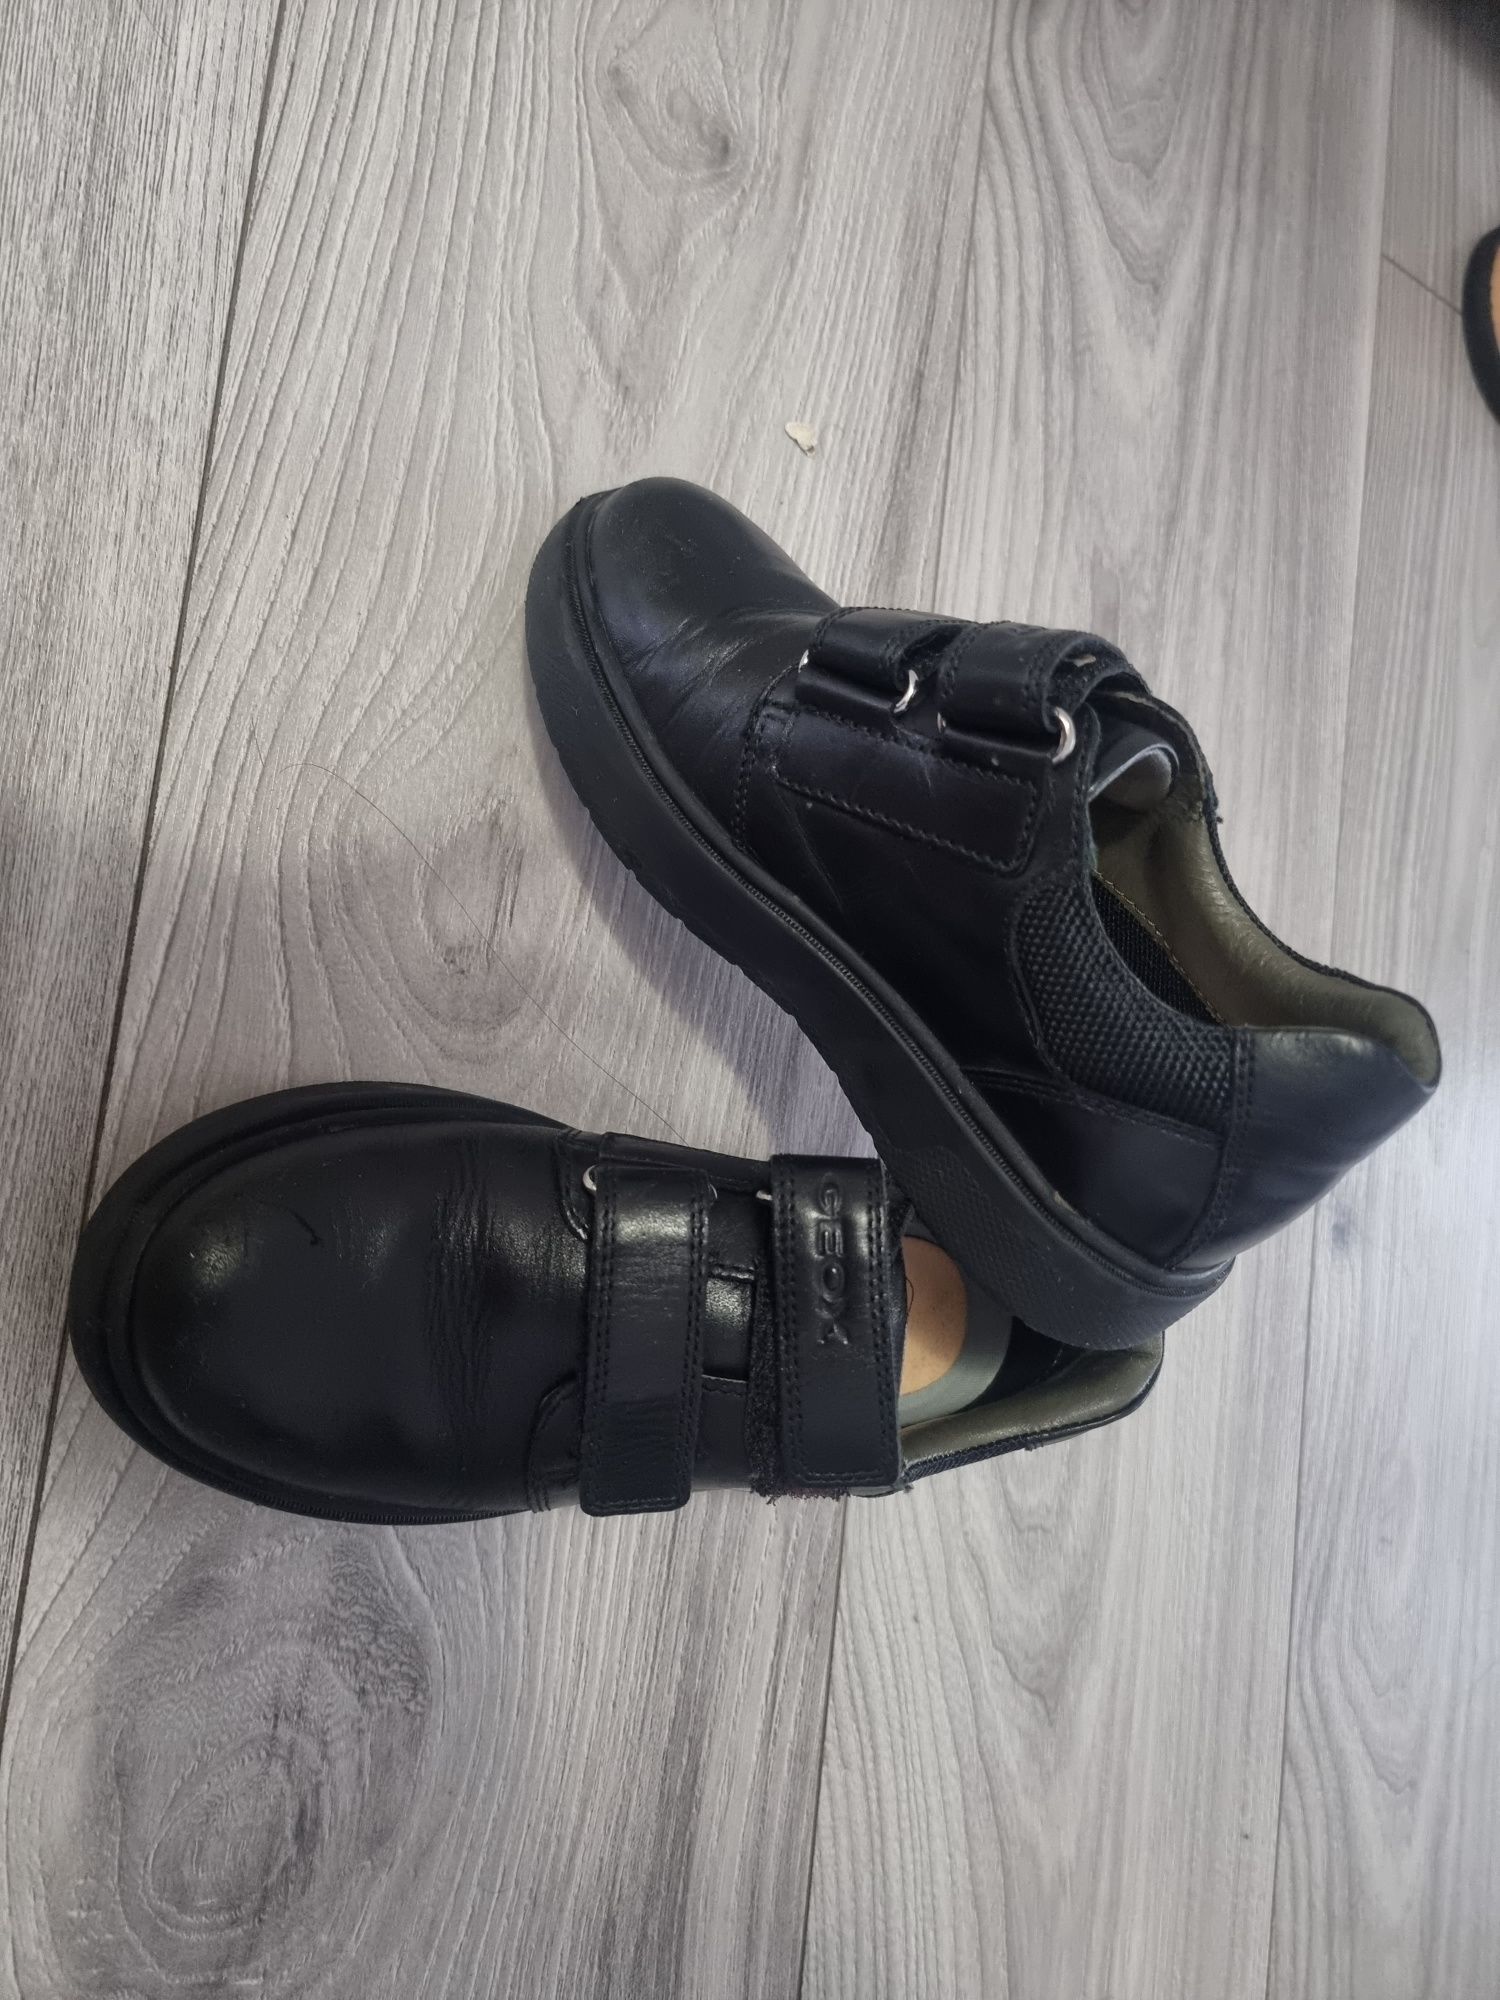 Pantofi piele Geox, mărimea 31